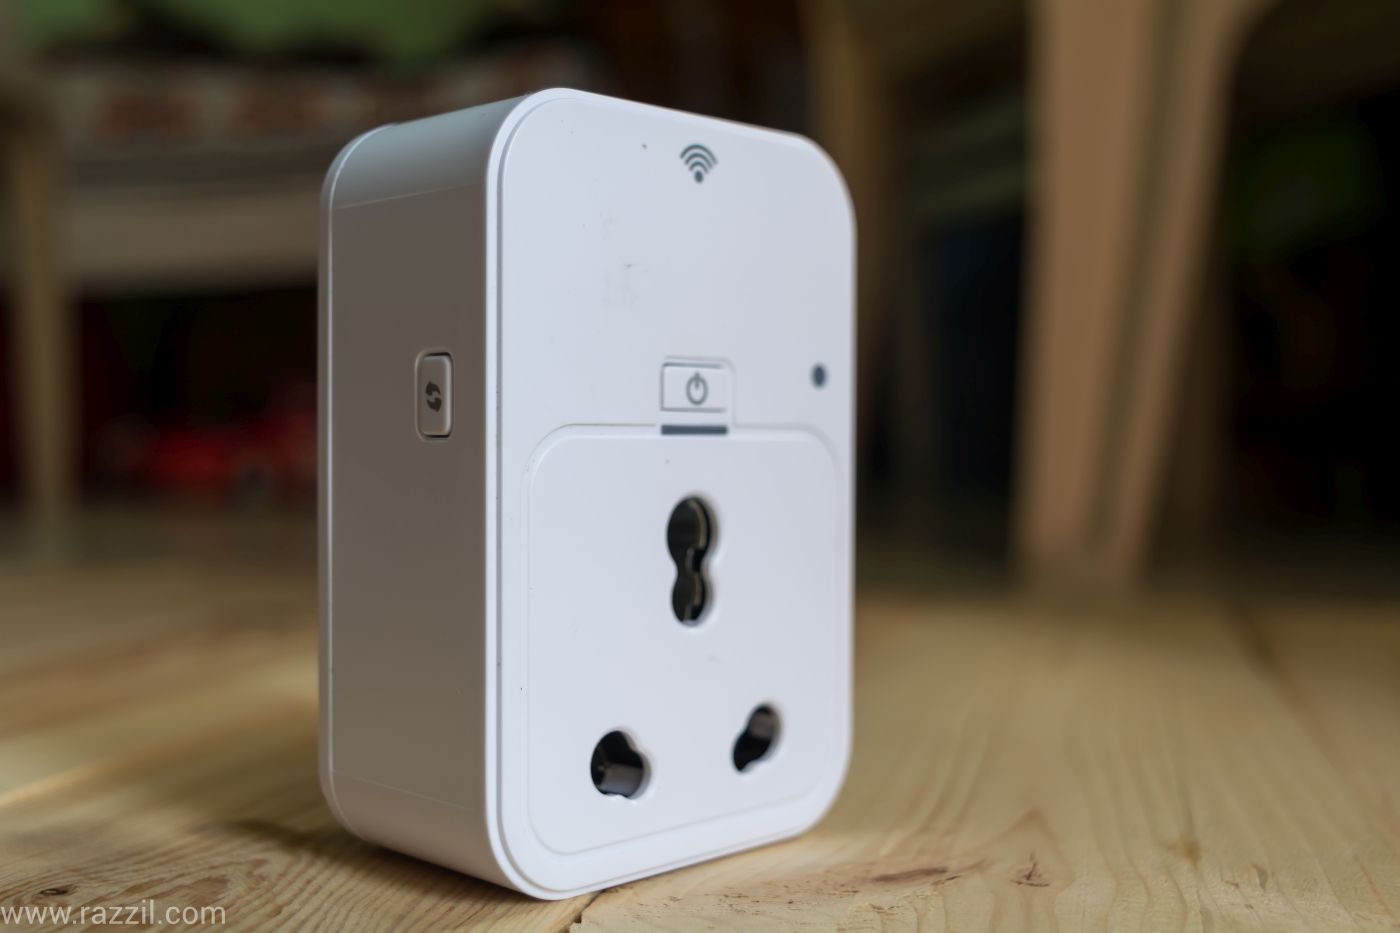 Dlink Smart Plug India Amazon Echo